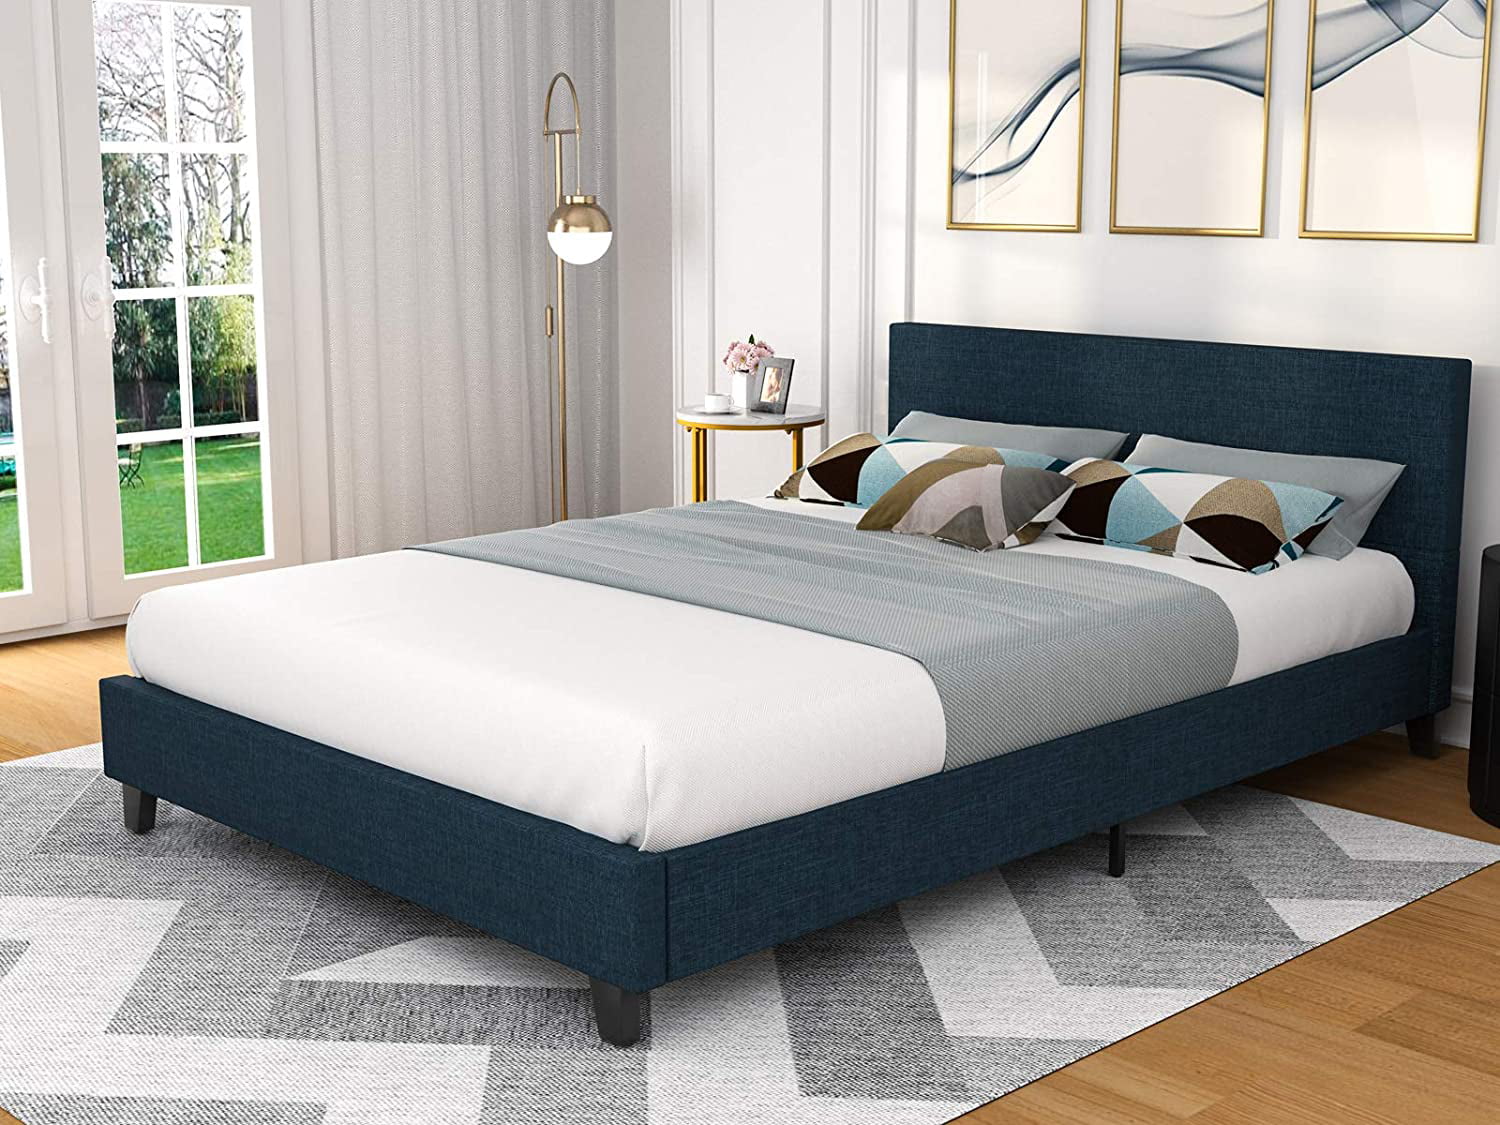 Mecor Upholstered Linen Platform Bed, Platform Bed Frame With Fabric Headboard